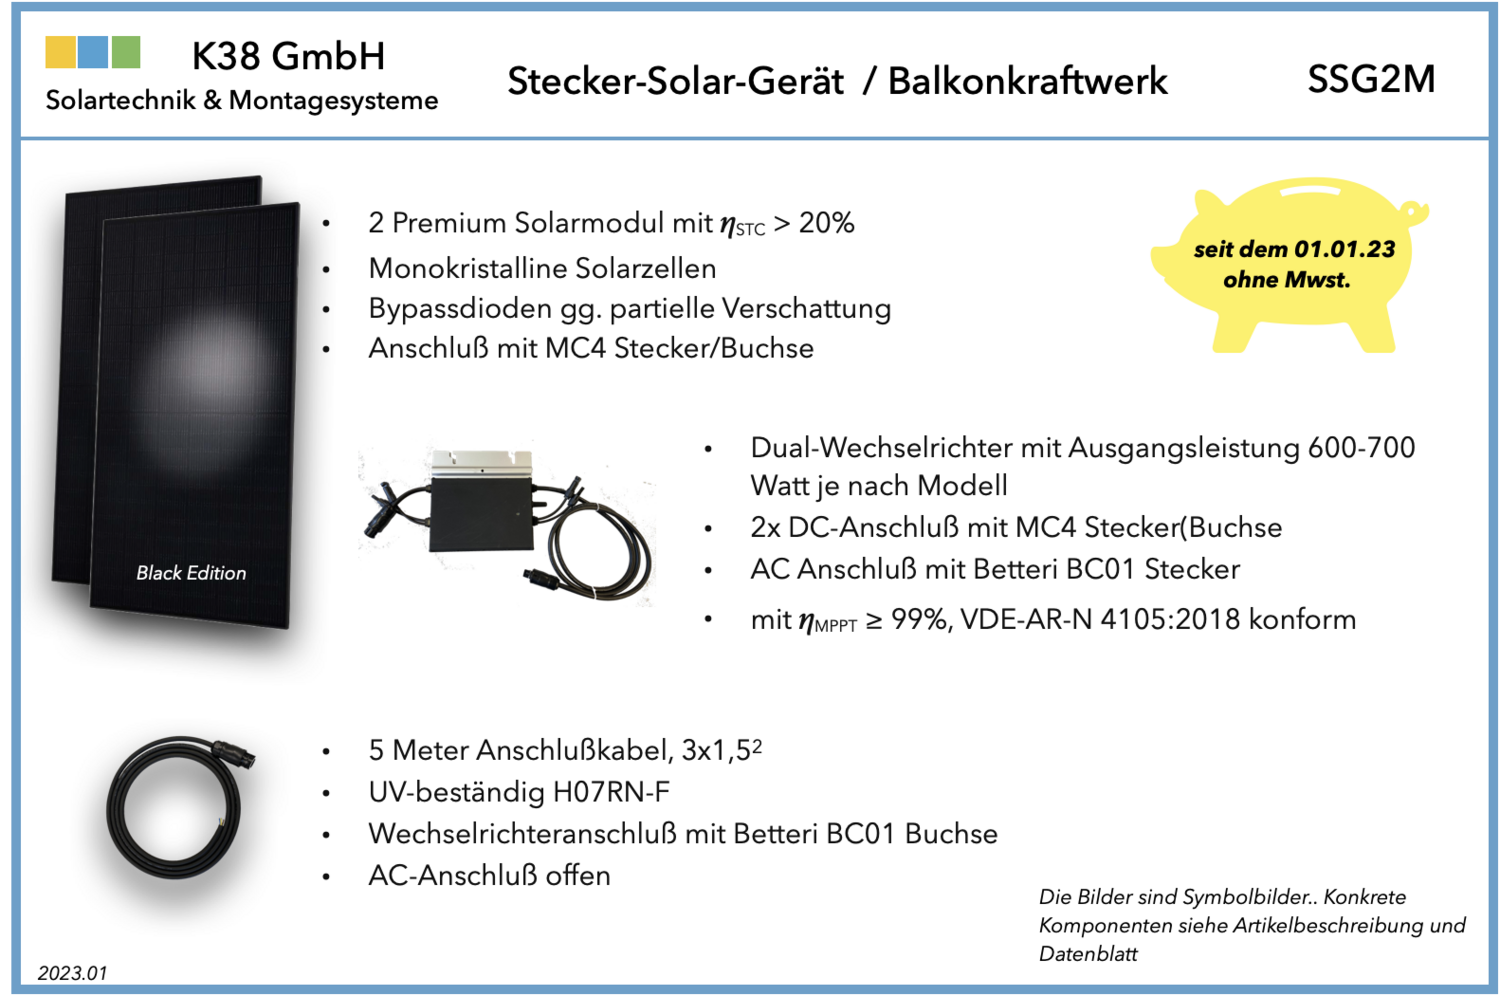 Stecker-Solar-Gerät mit zwei Modulen, DCmax 760Wp, ACmax 700Watt